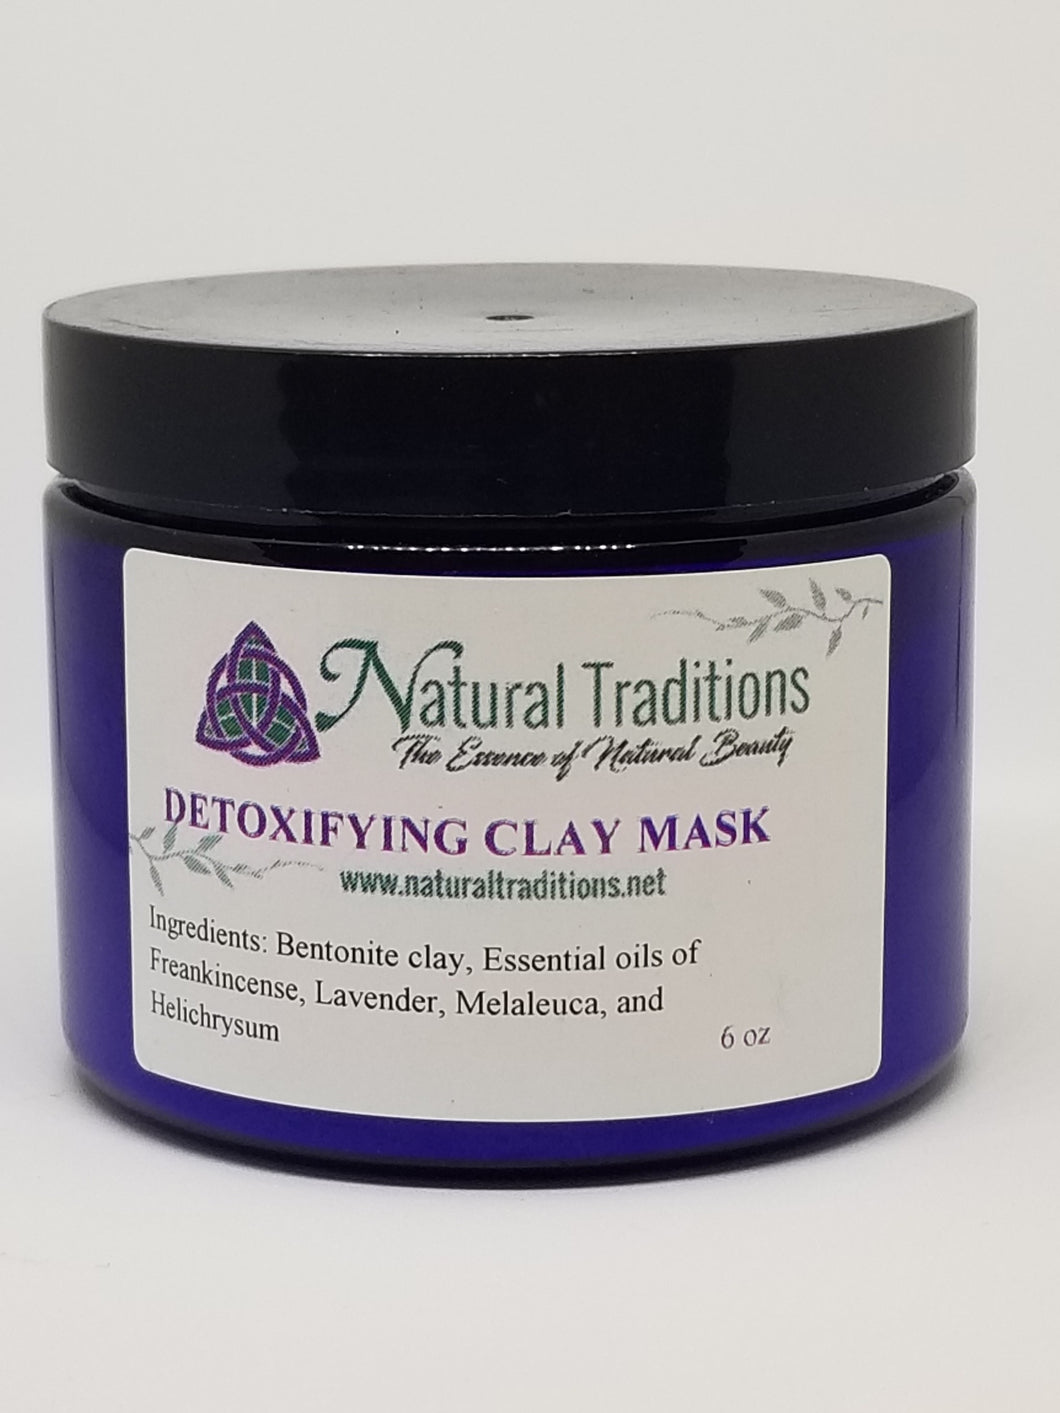 Detoxifying Clay Mask